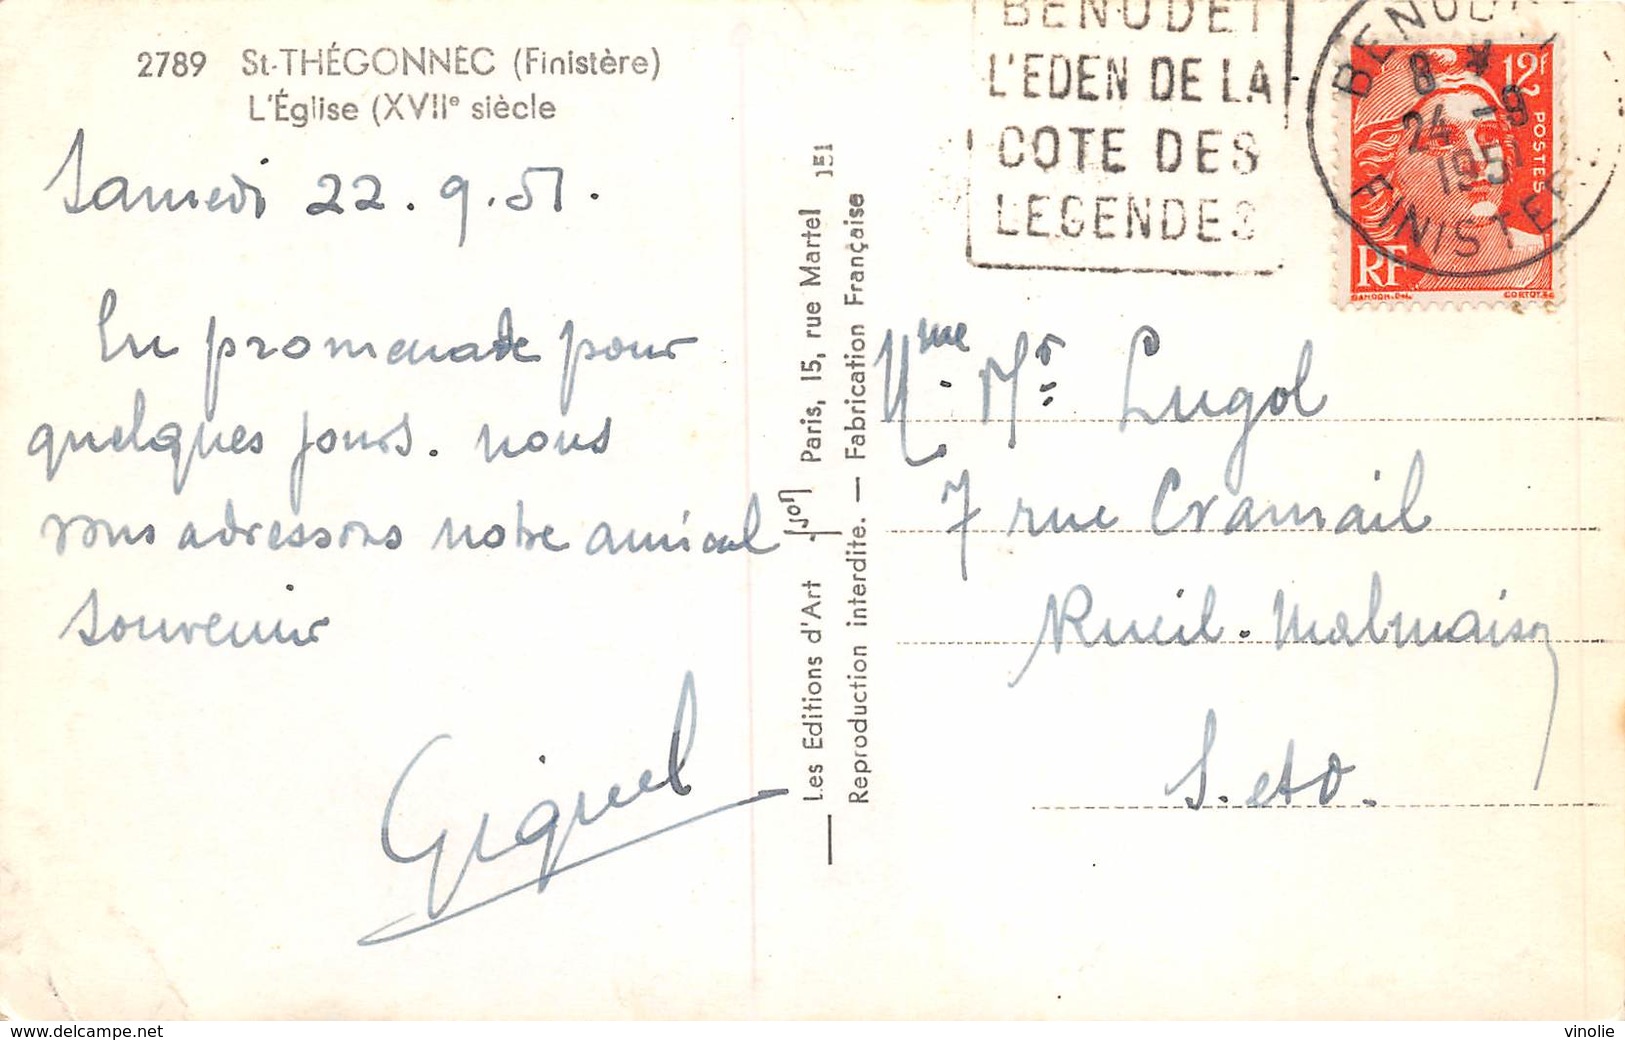 20-4640 : DAGUIN. BENODET L'EDEN DE LA COTE DES LEGENDES. FINISTERE. 24 SEPTEMBRE 1951 - Oblitérations Mécaniques (Autres)